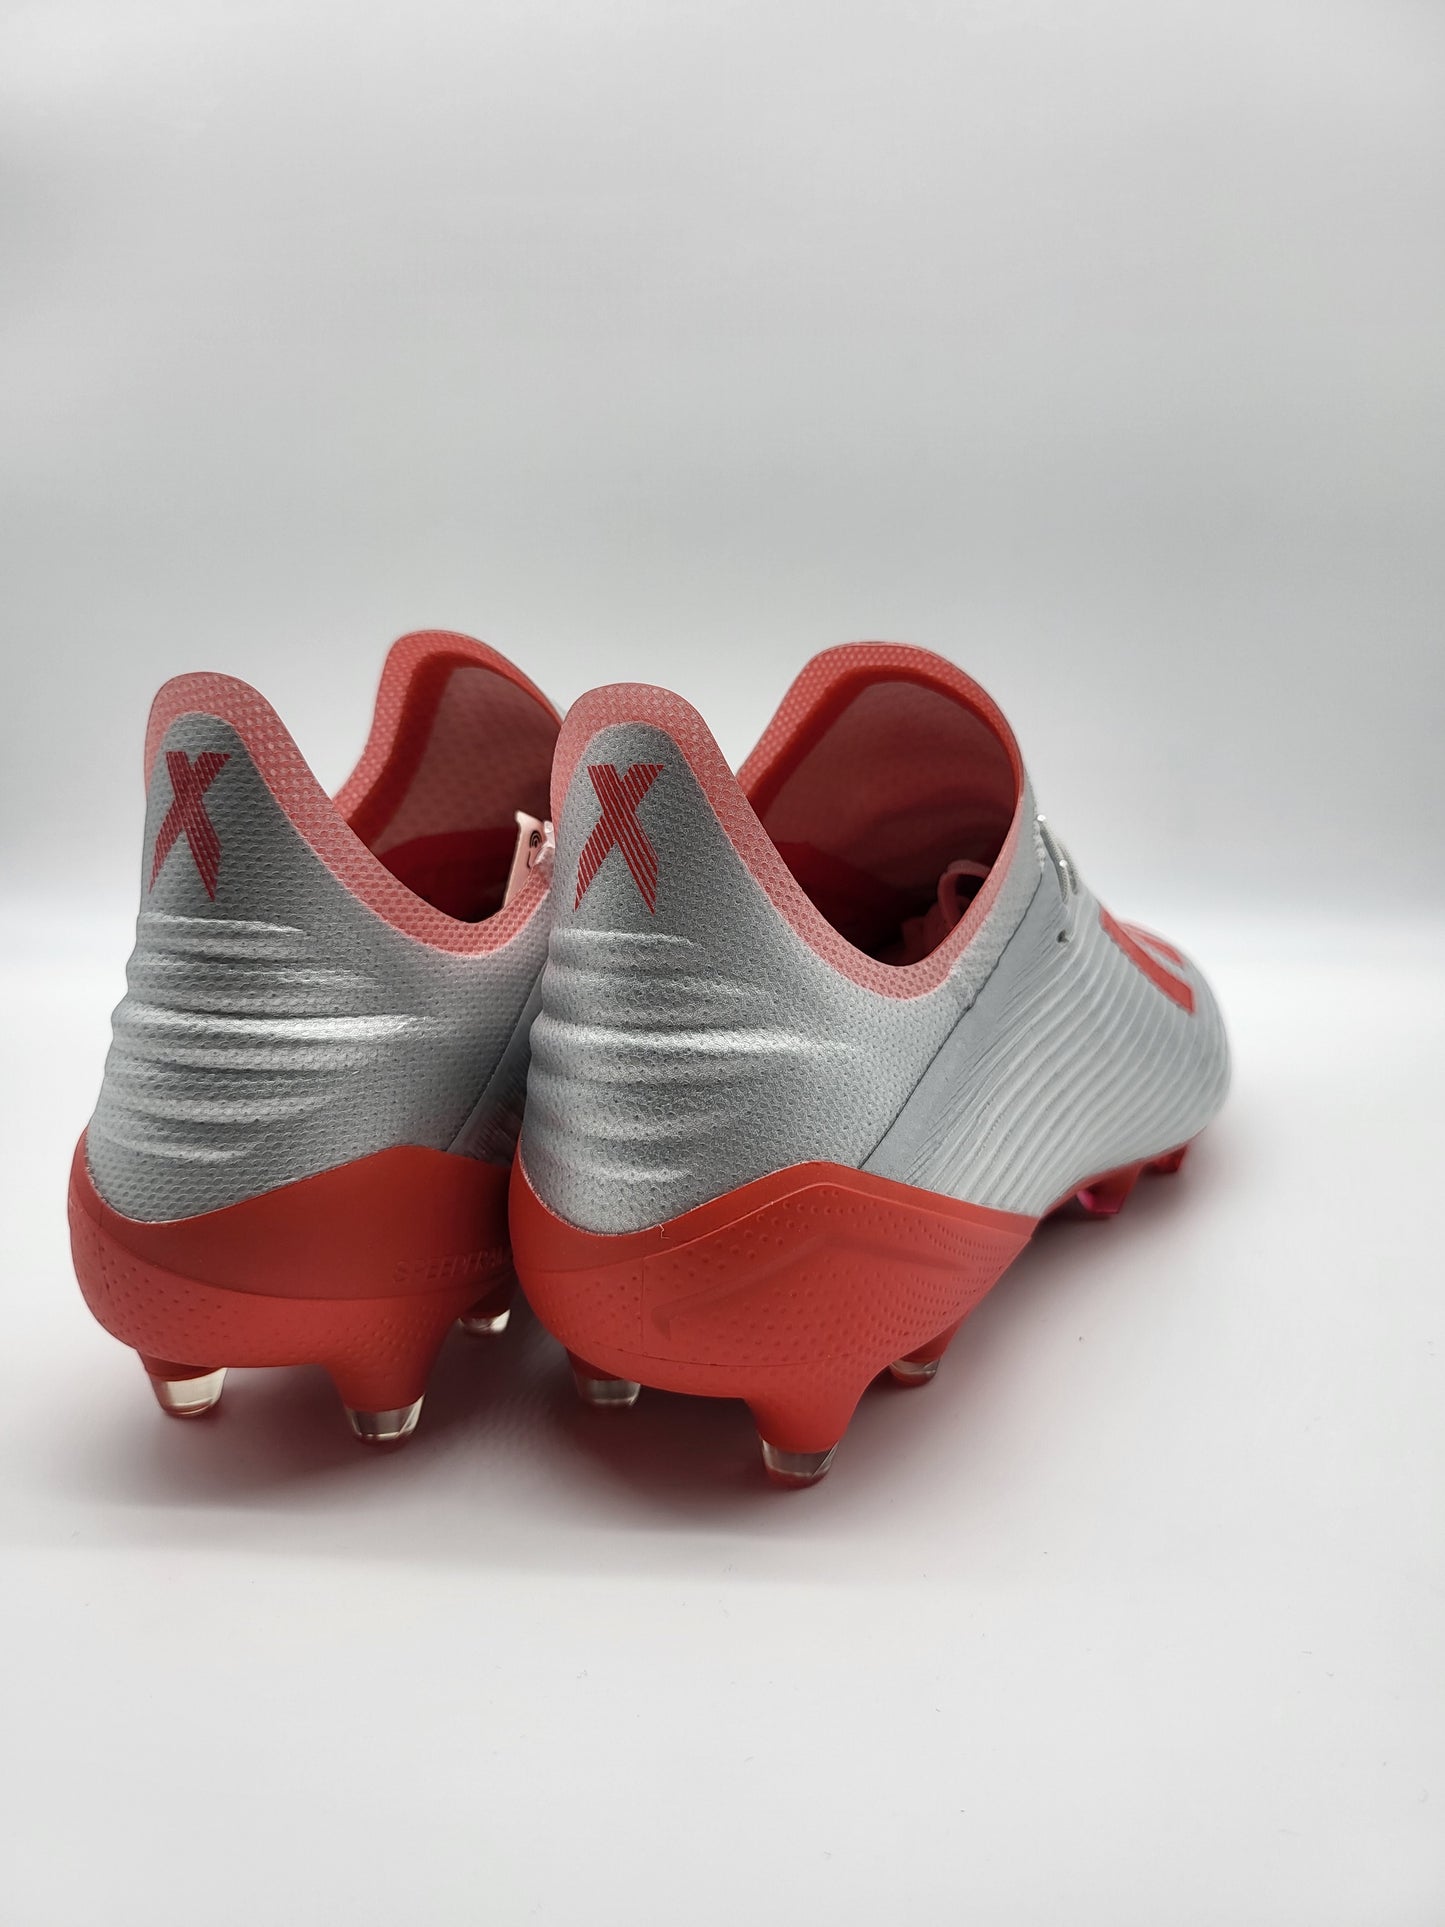 Adidas X 19.1 FG Gray Red